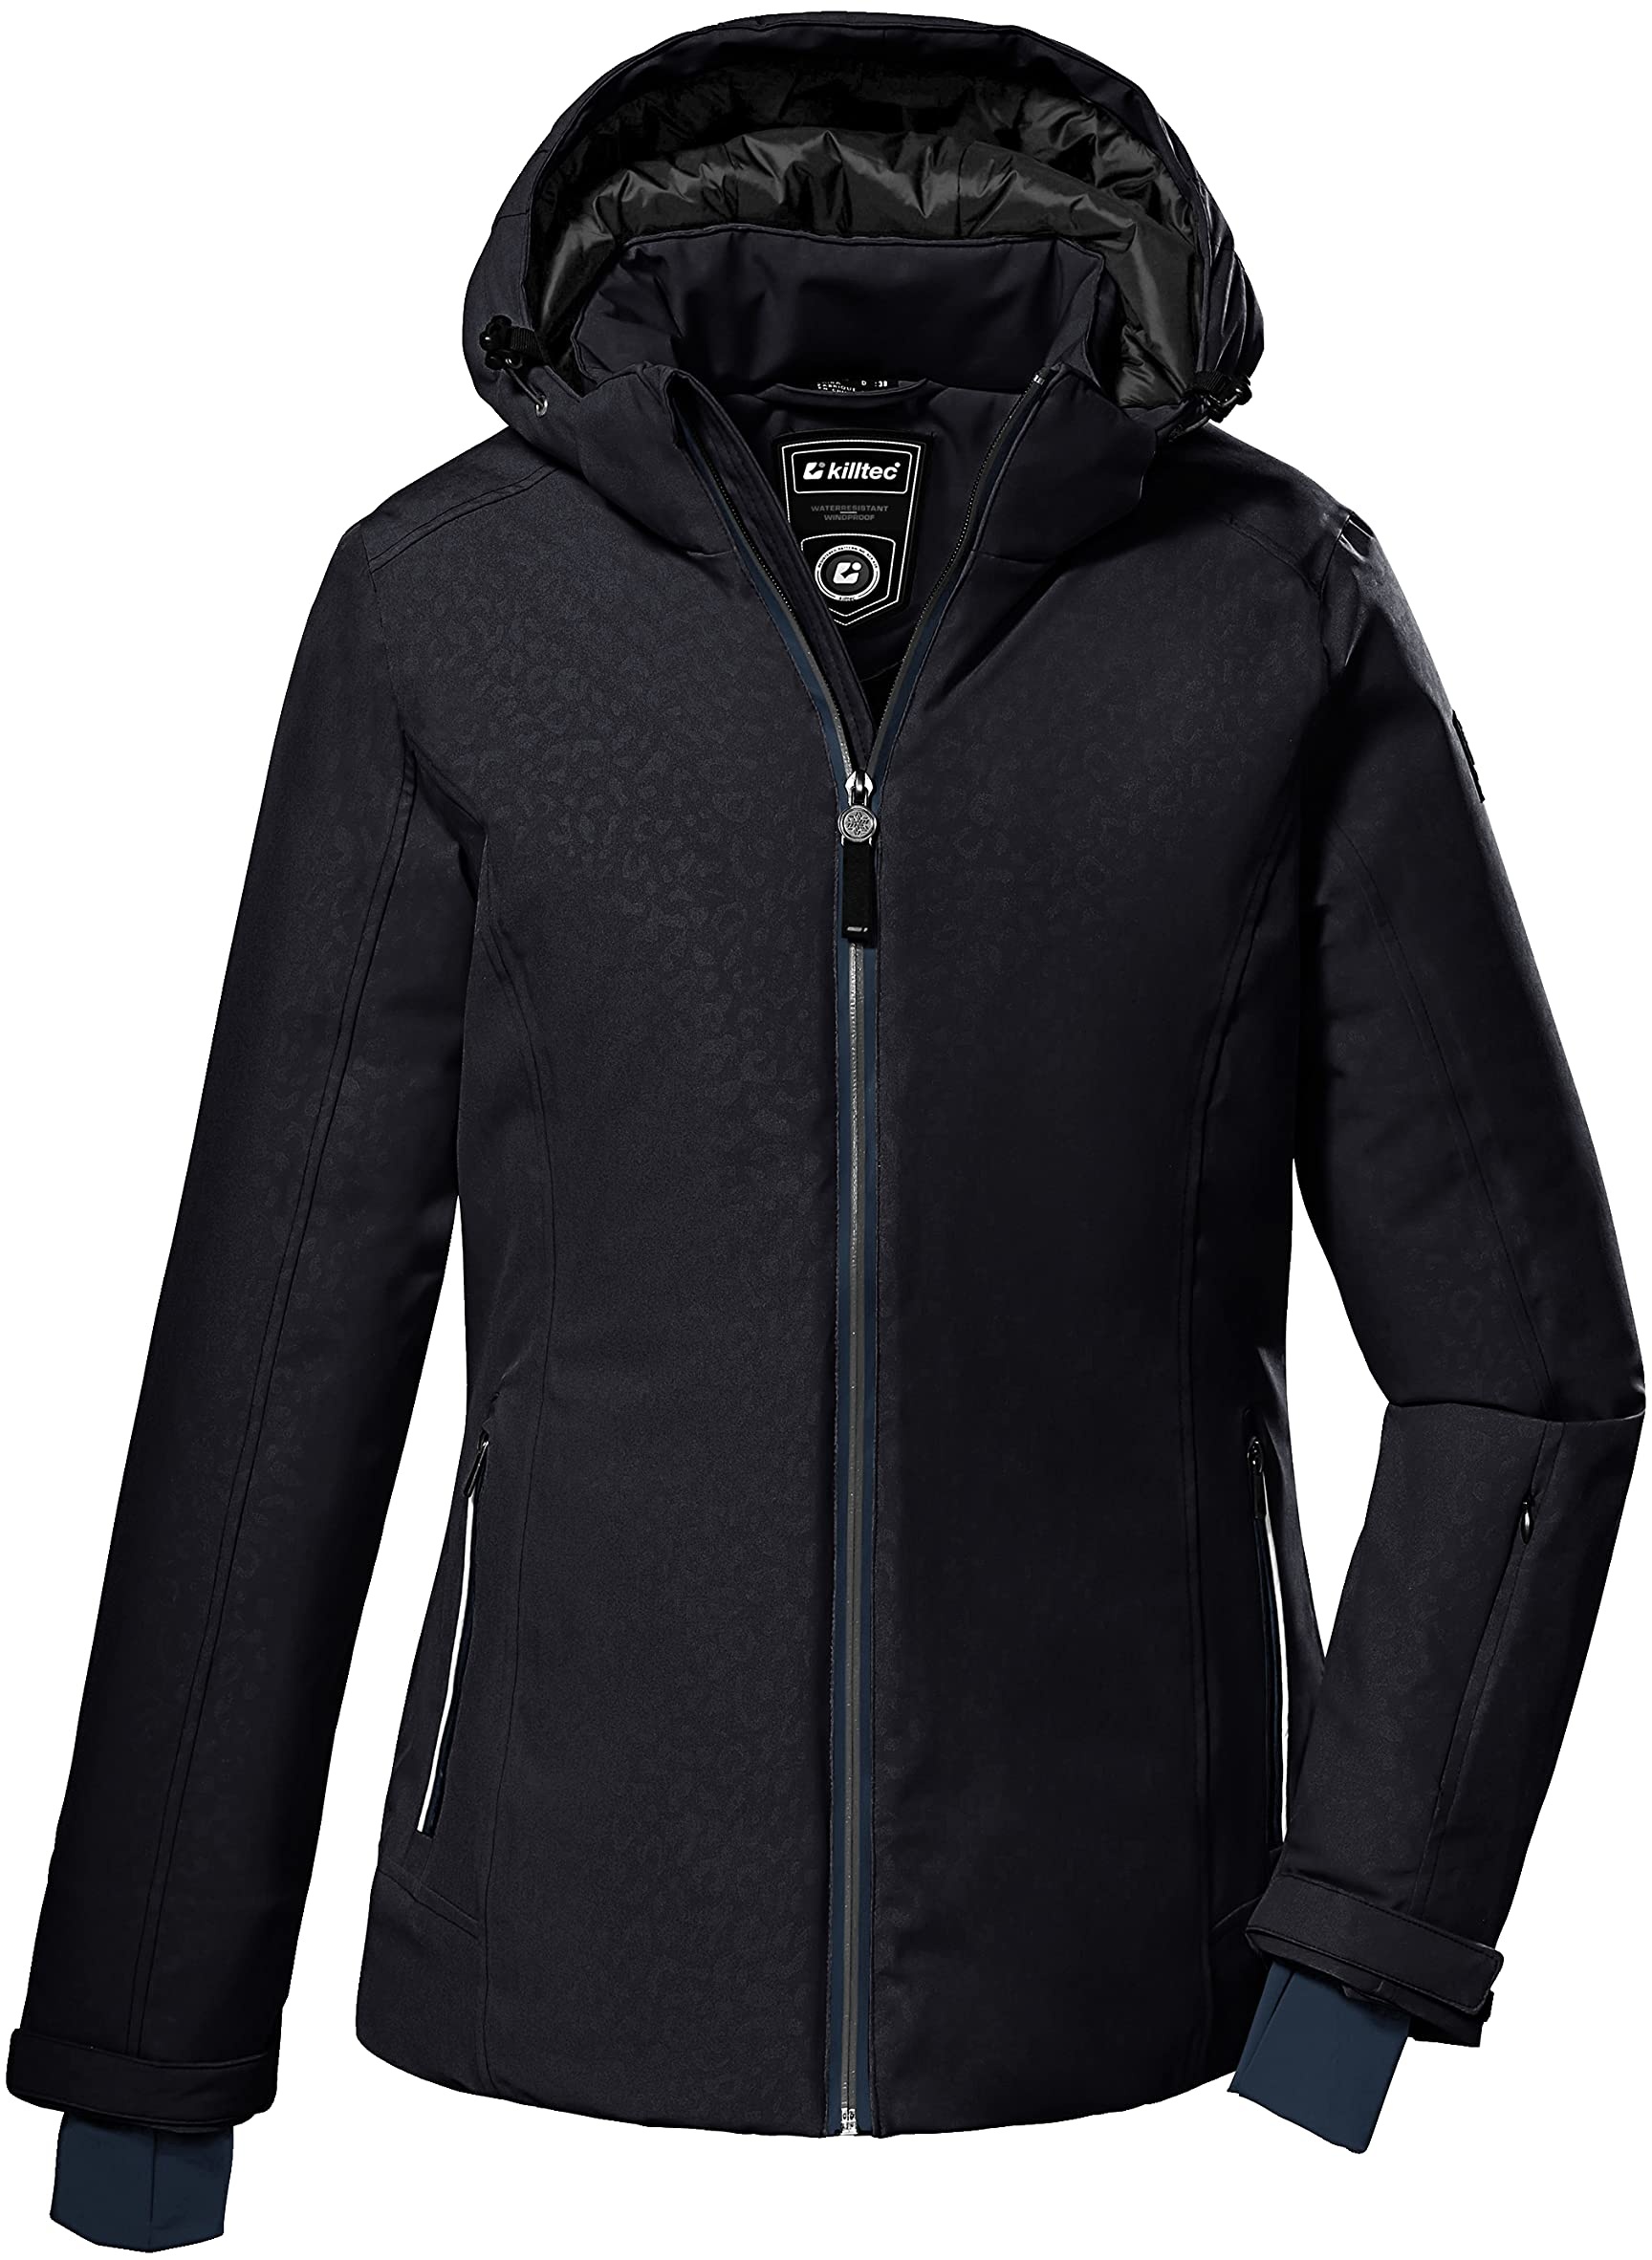 Killtec Damen Ksw 111 Wmn Jckt Skijacke Funktionsjacke mit abzippbarer Kapuze und Schneefang, schwarz blau, 38 EU